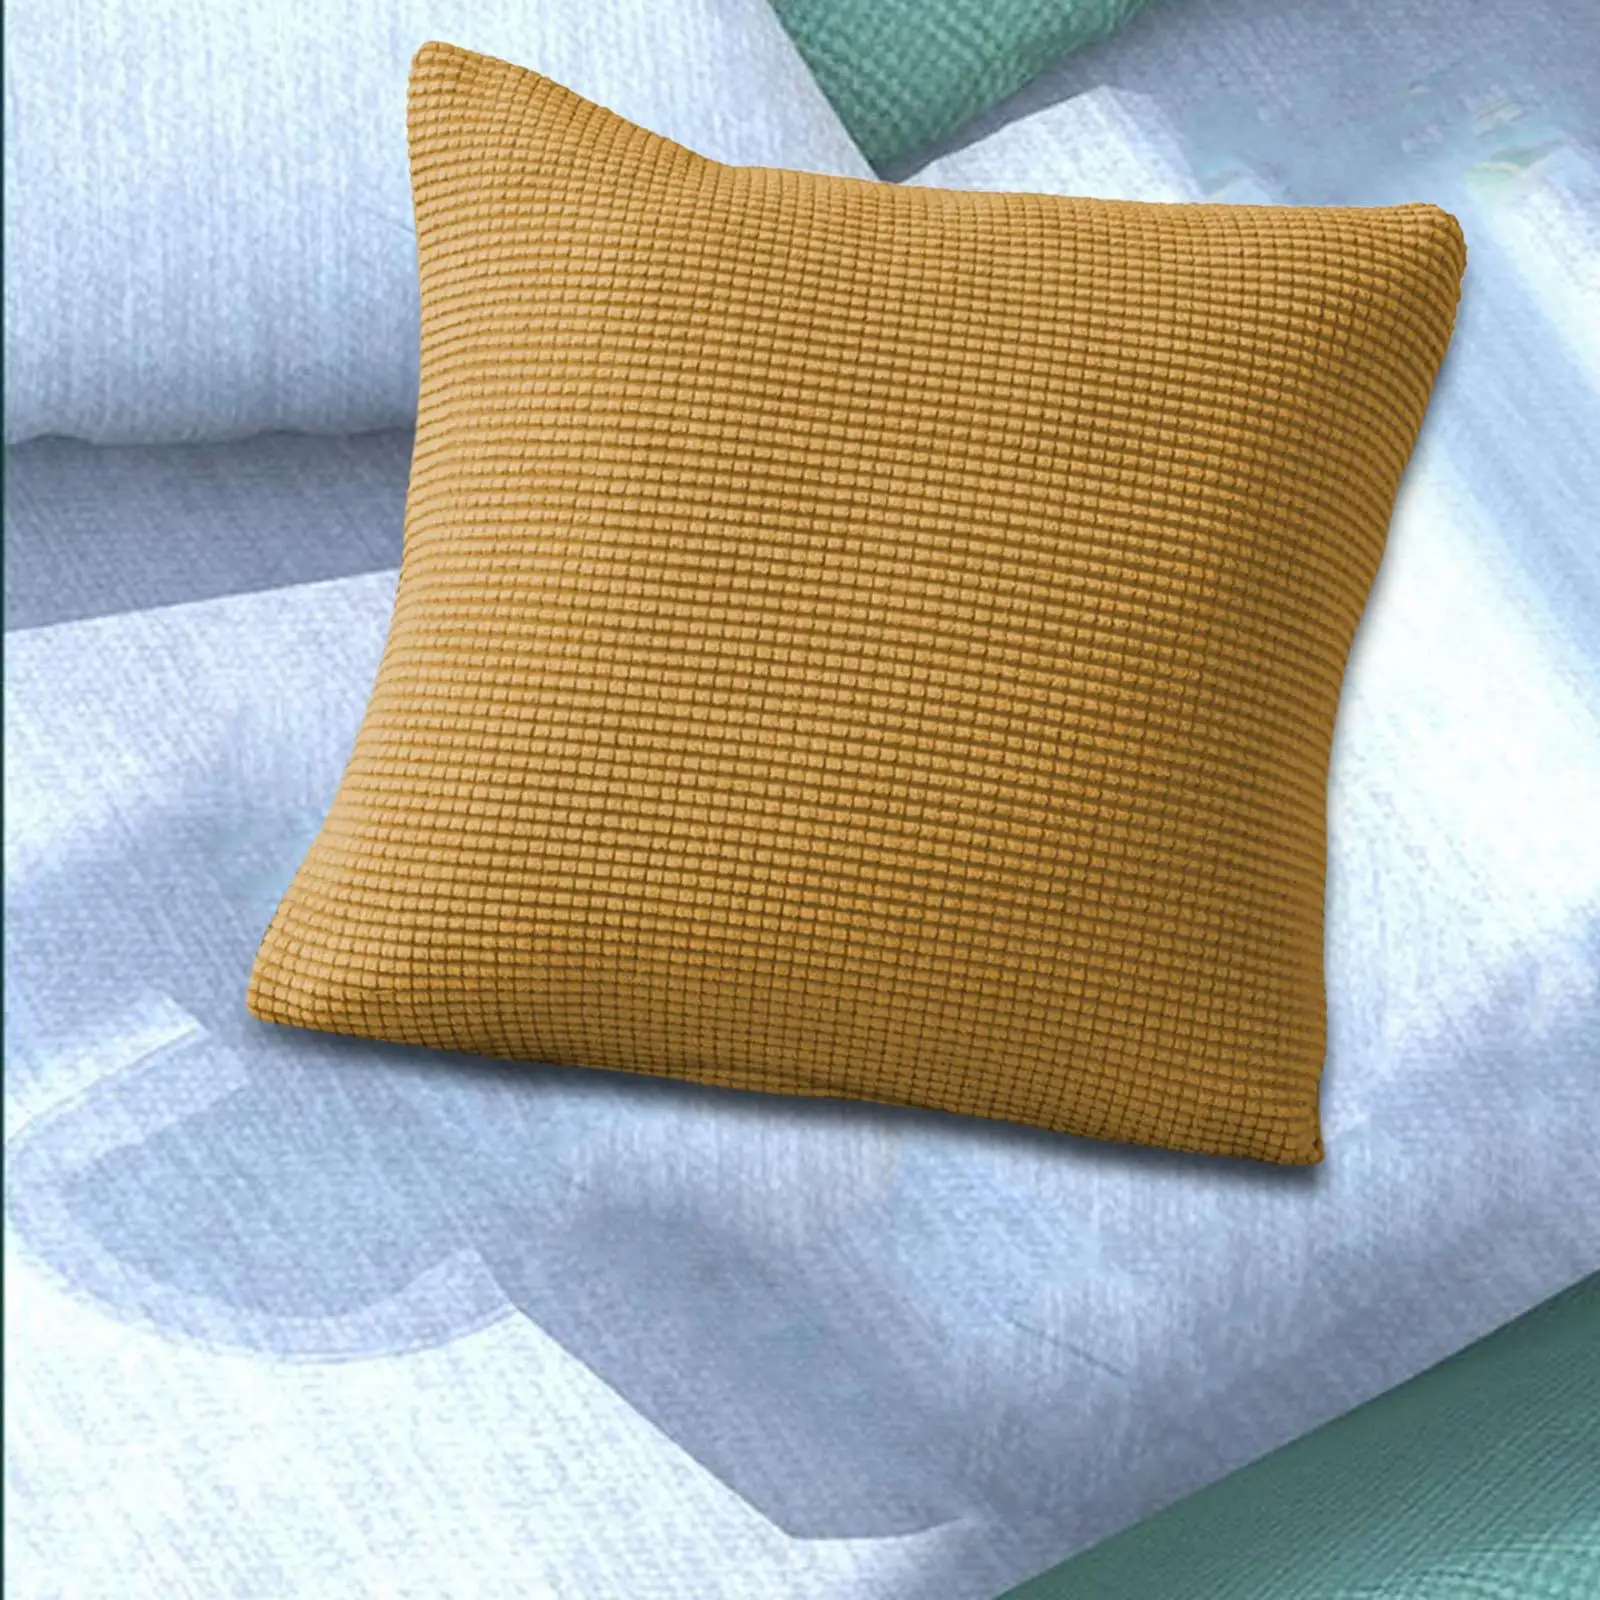 Throw Pillow Case Sofa Pillowcase Comfortable Decorative Solid Color for Car